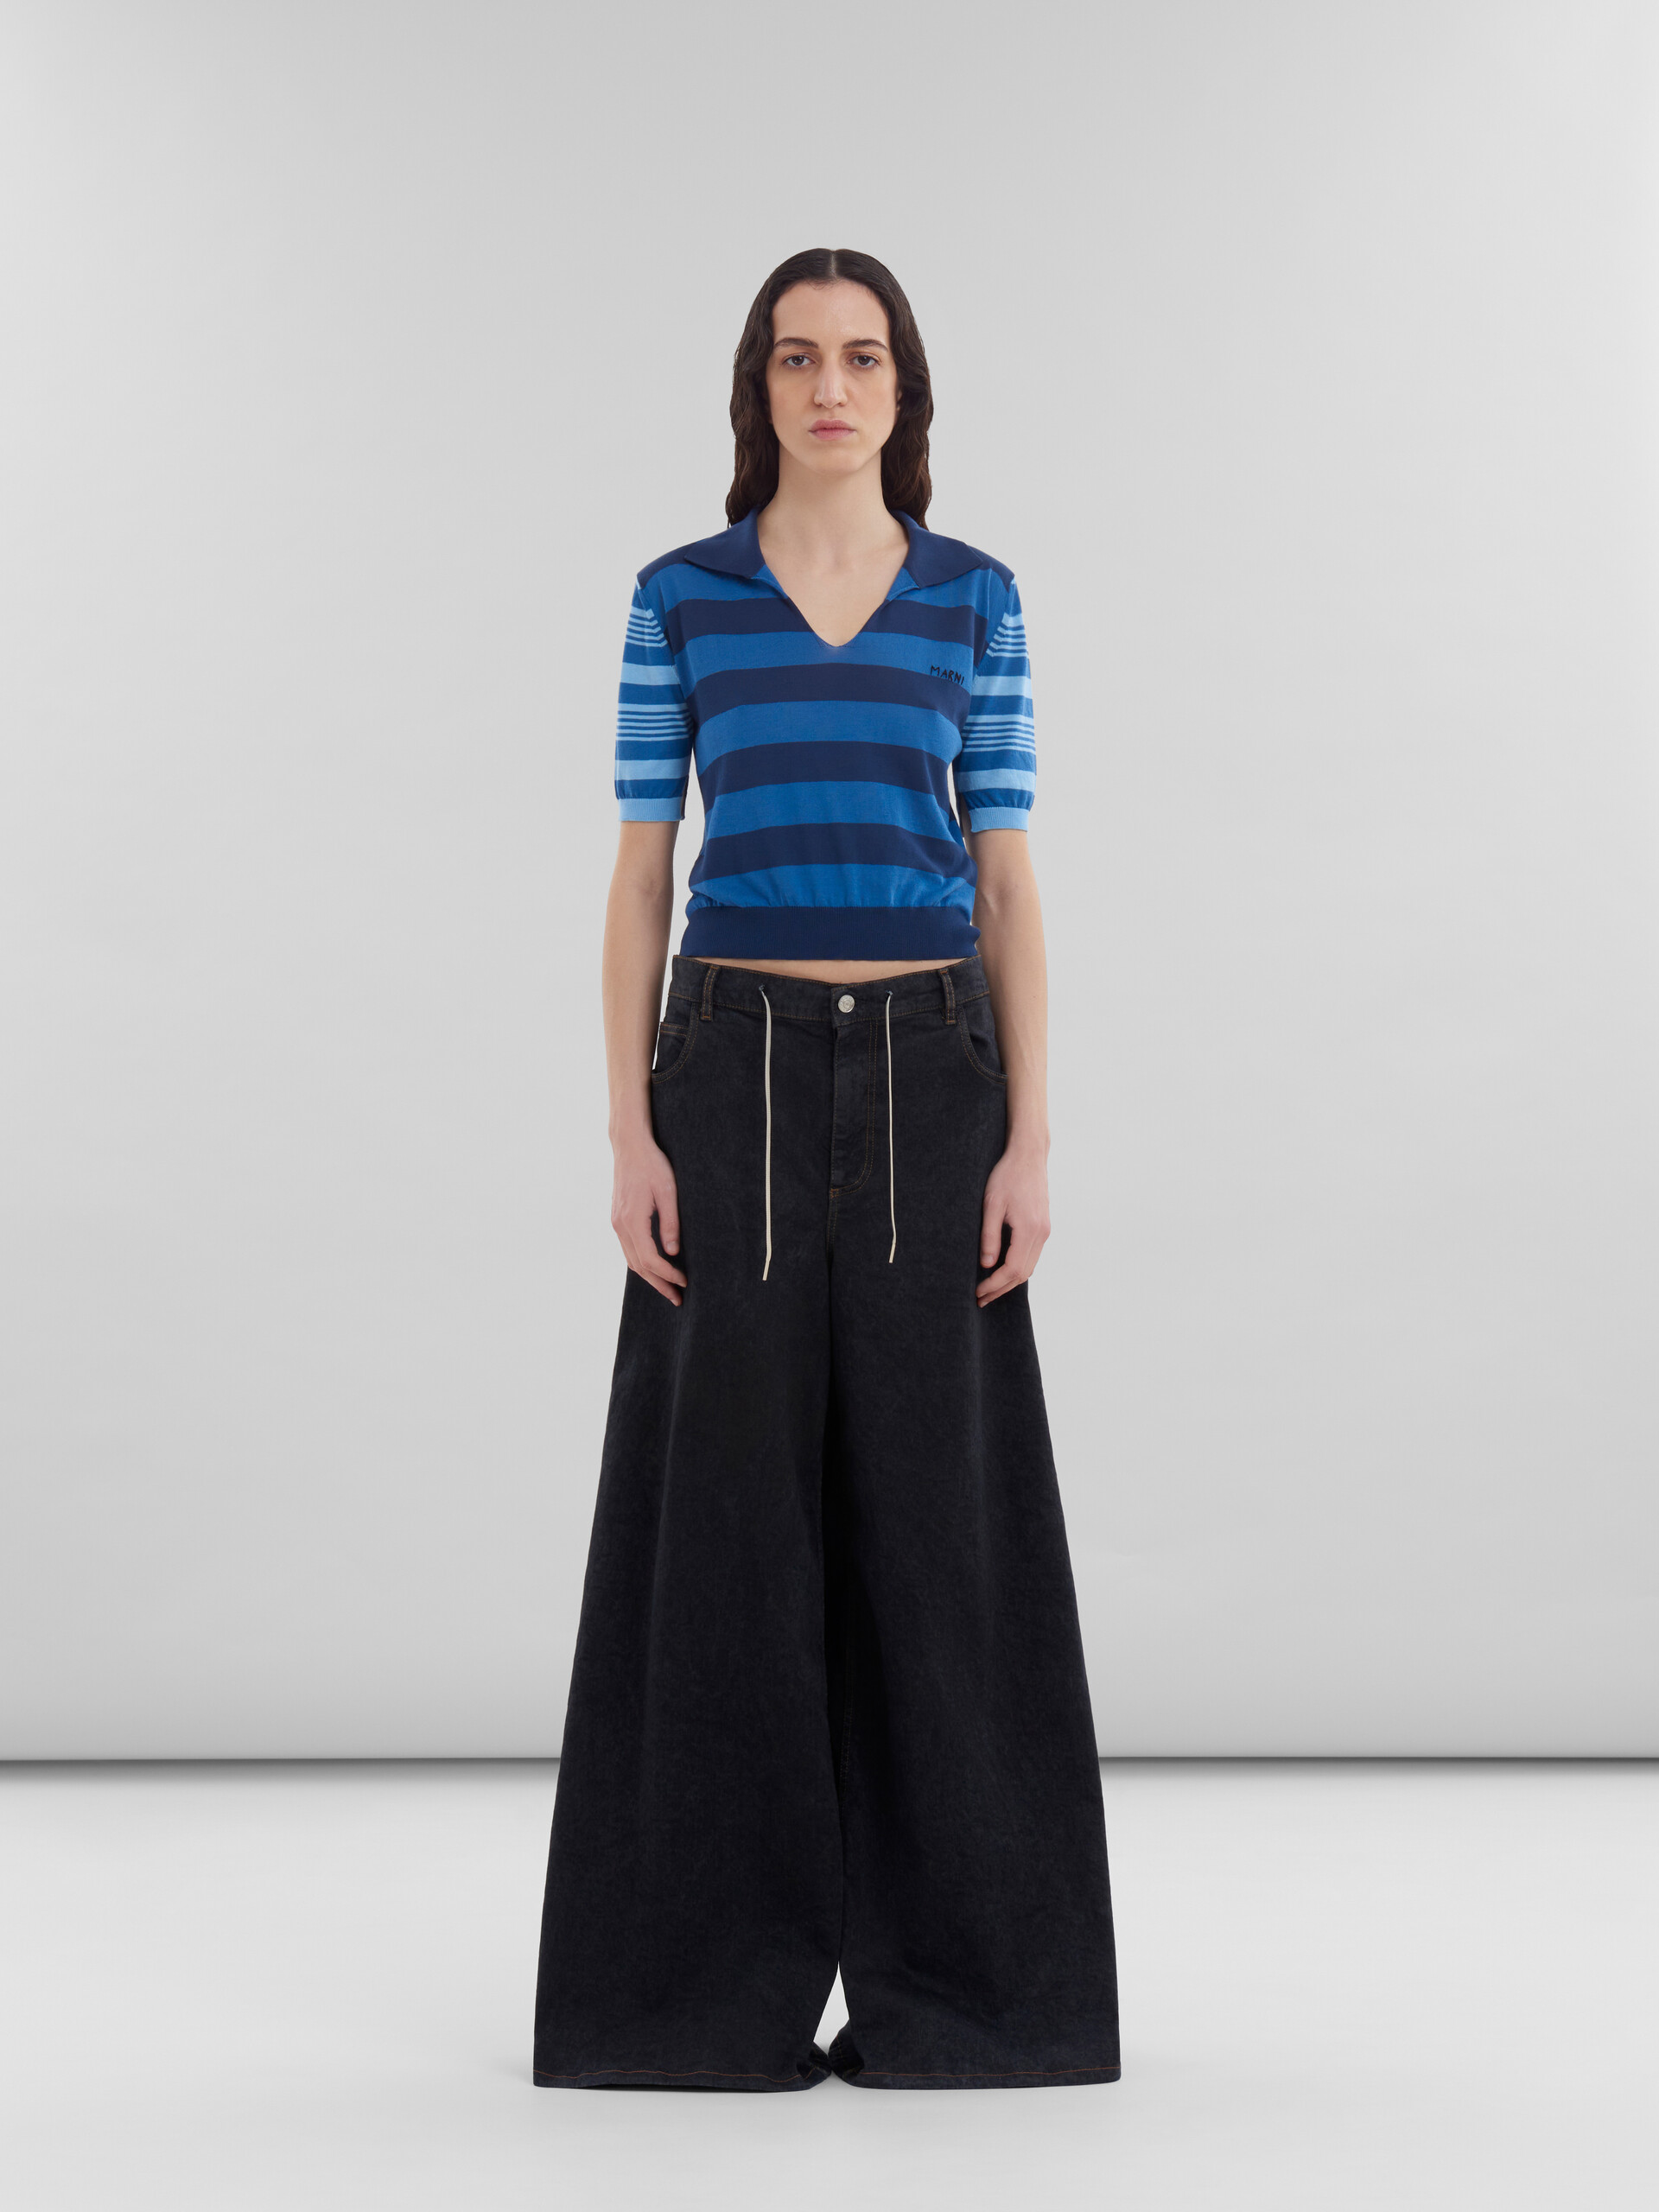 Jeans a gamba larga in denim effetto marmorizzato nero - Pantaloni - Image 2